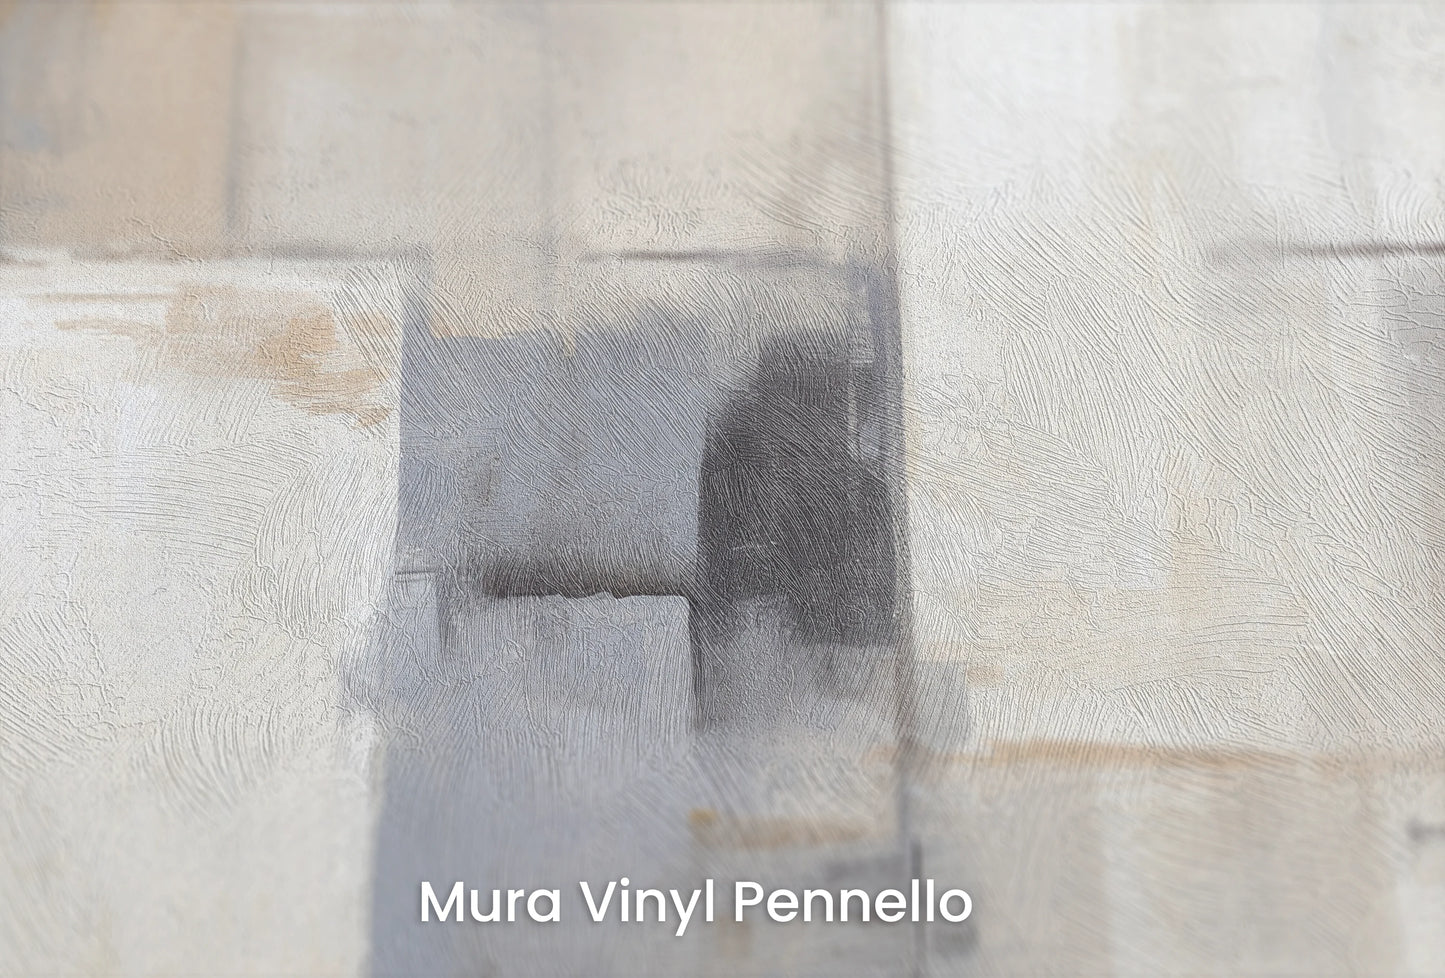 Zbliżenie na artystyczną fototapetę o nazwie Muted Tones na podłożu Mura Vinyl Pennello - faktura pociągnięć pędzla malarskiego.